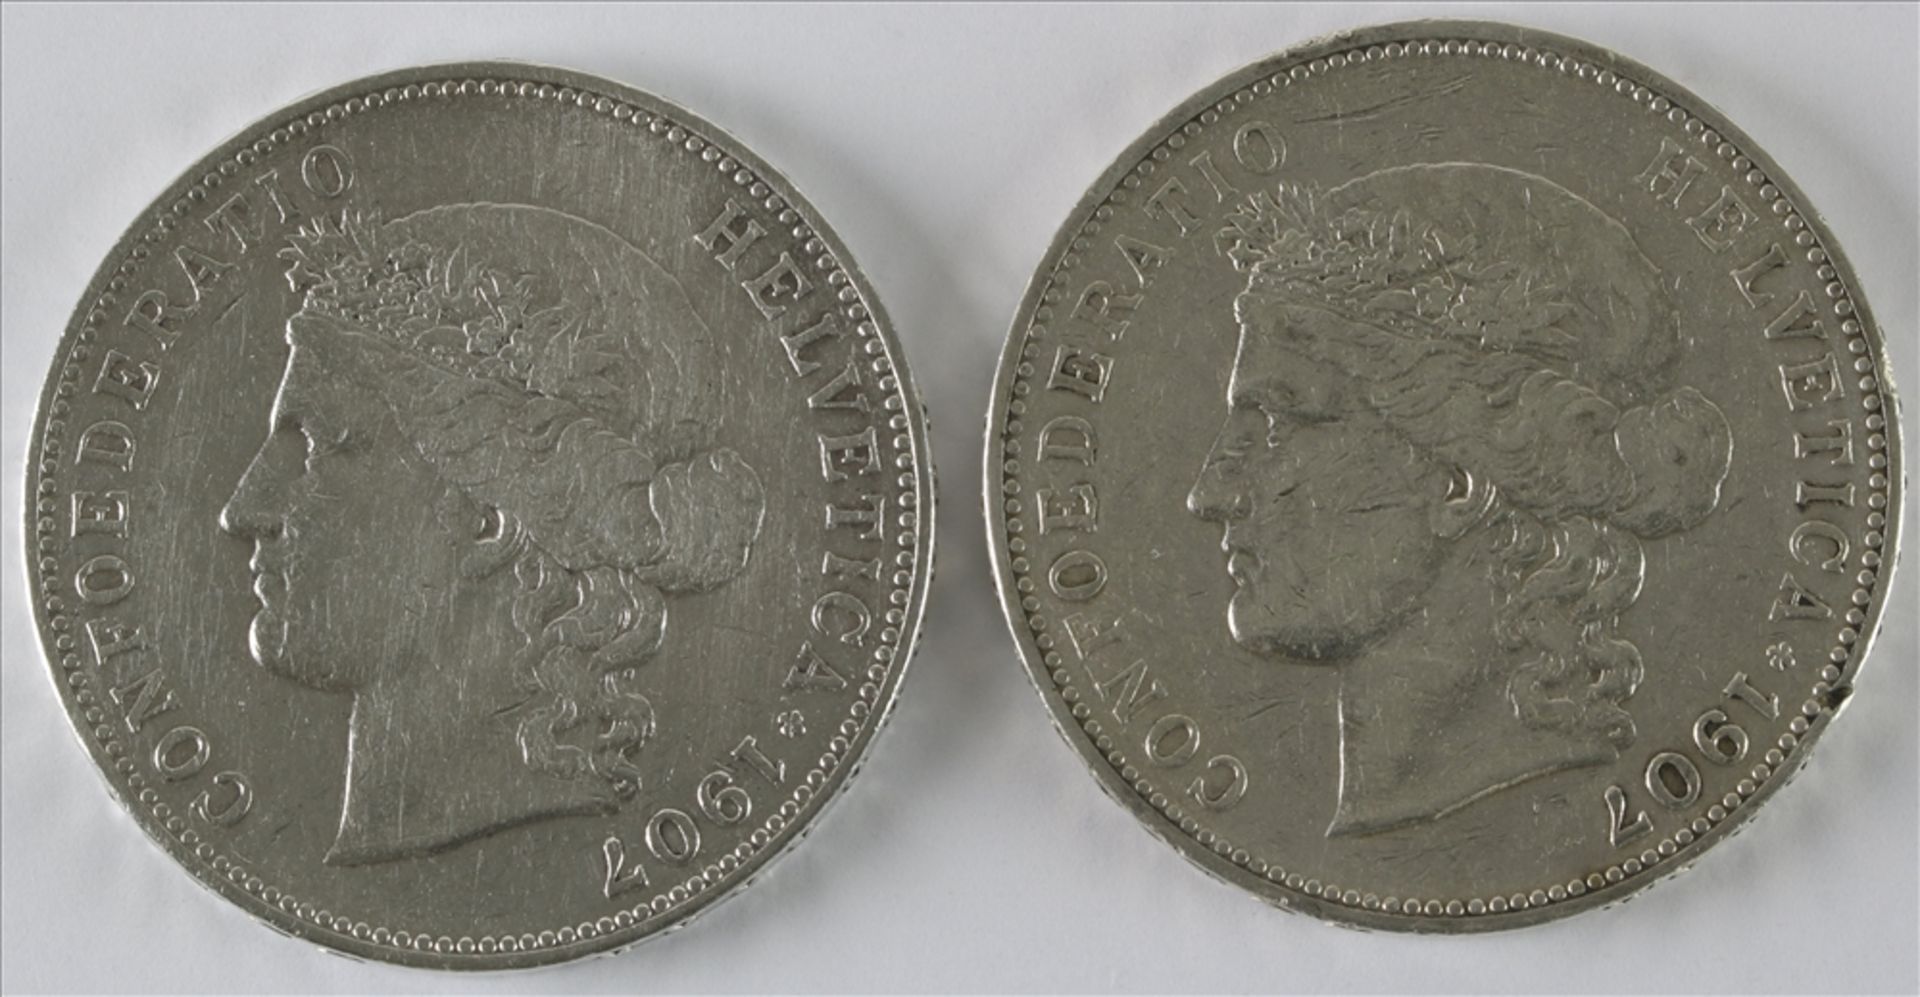 Zwei 5 Franken Münzen Schweiz, 1907 B. Durchmesser ca. 37 mm, Gewicht ca. 24,9 Gramm. Guter Zustand.